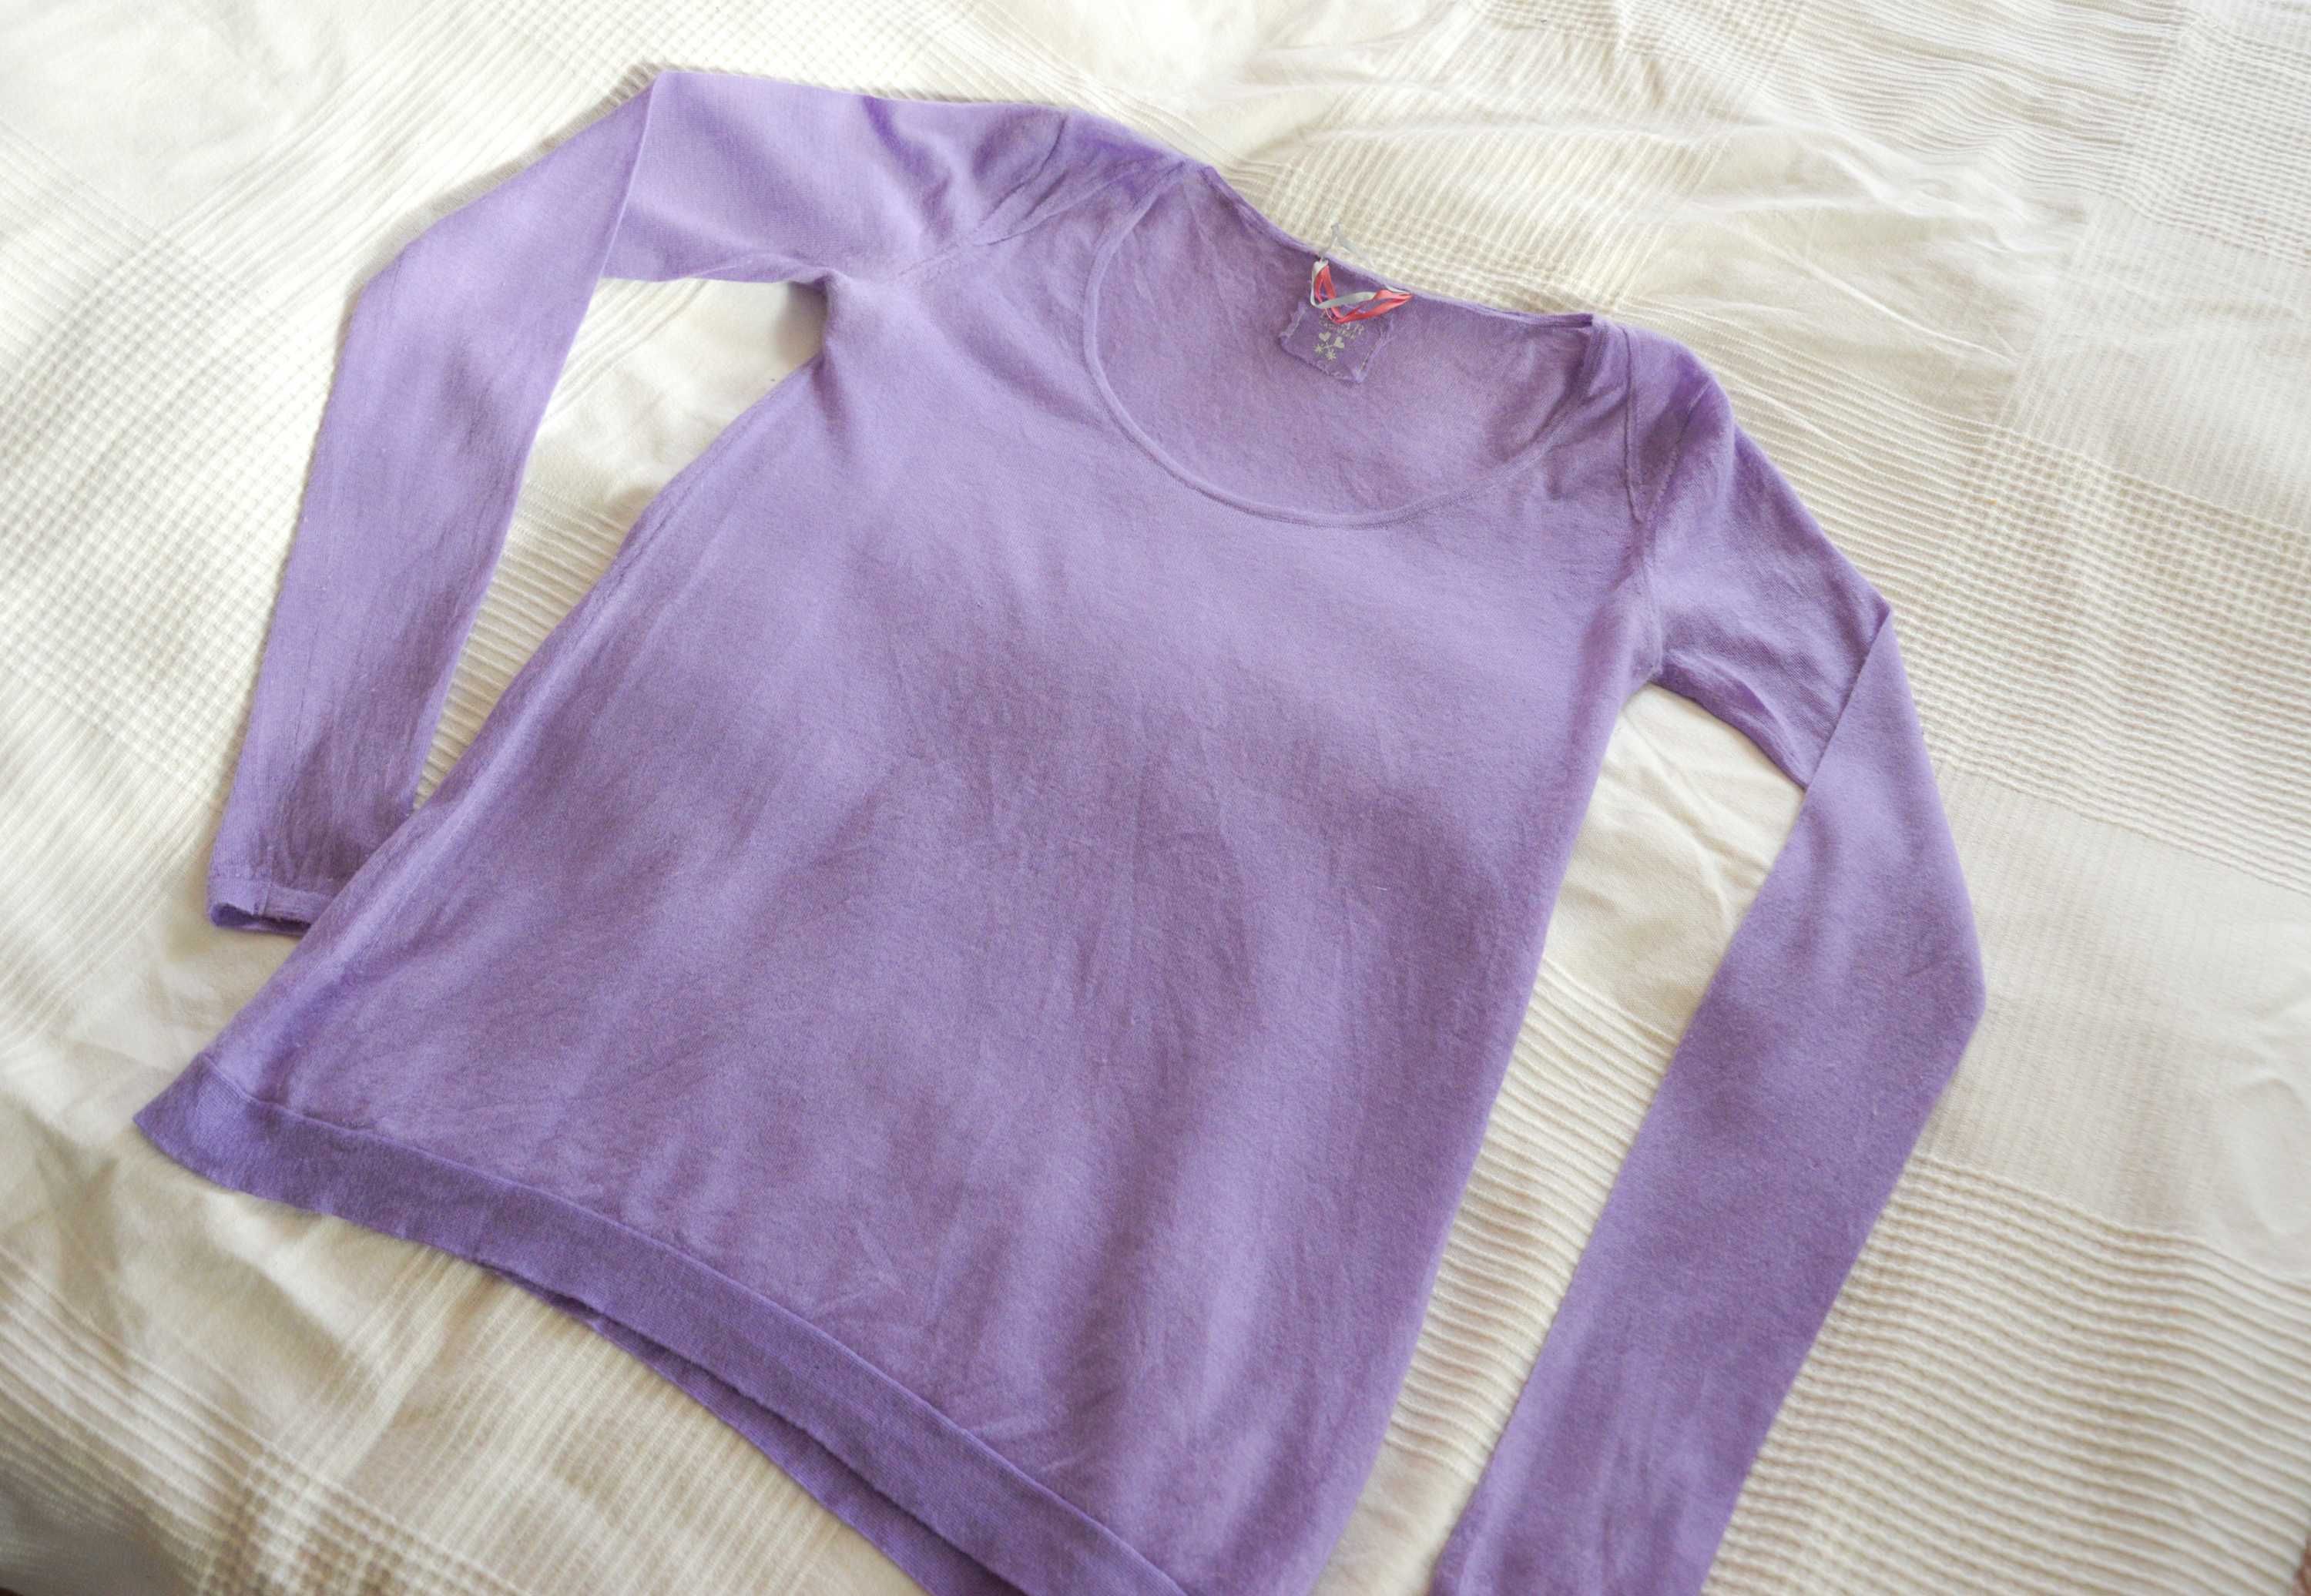 Sweter kaszmir pastelowy fiolet sweterek liliowy tissue cashmere 100 %